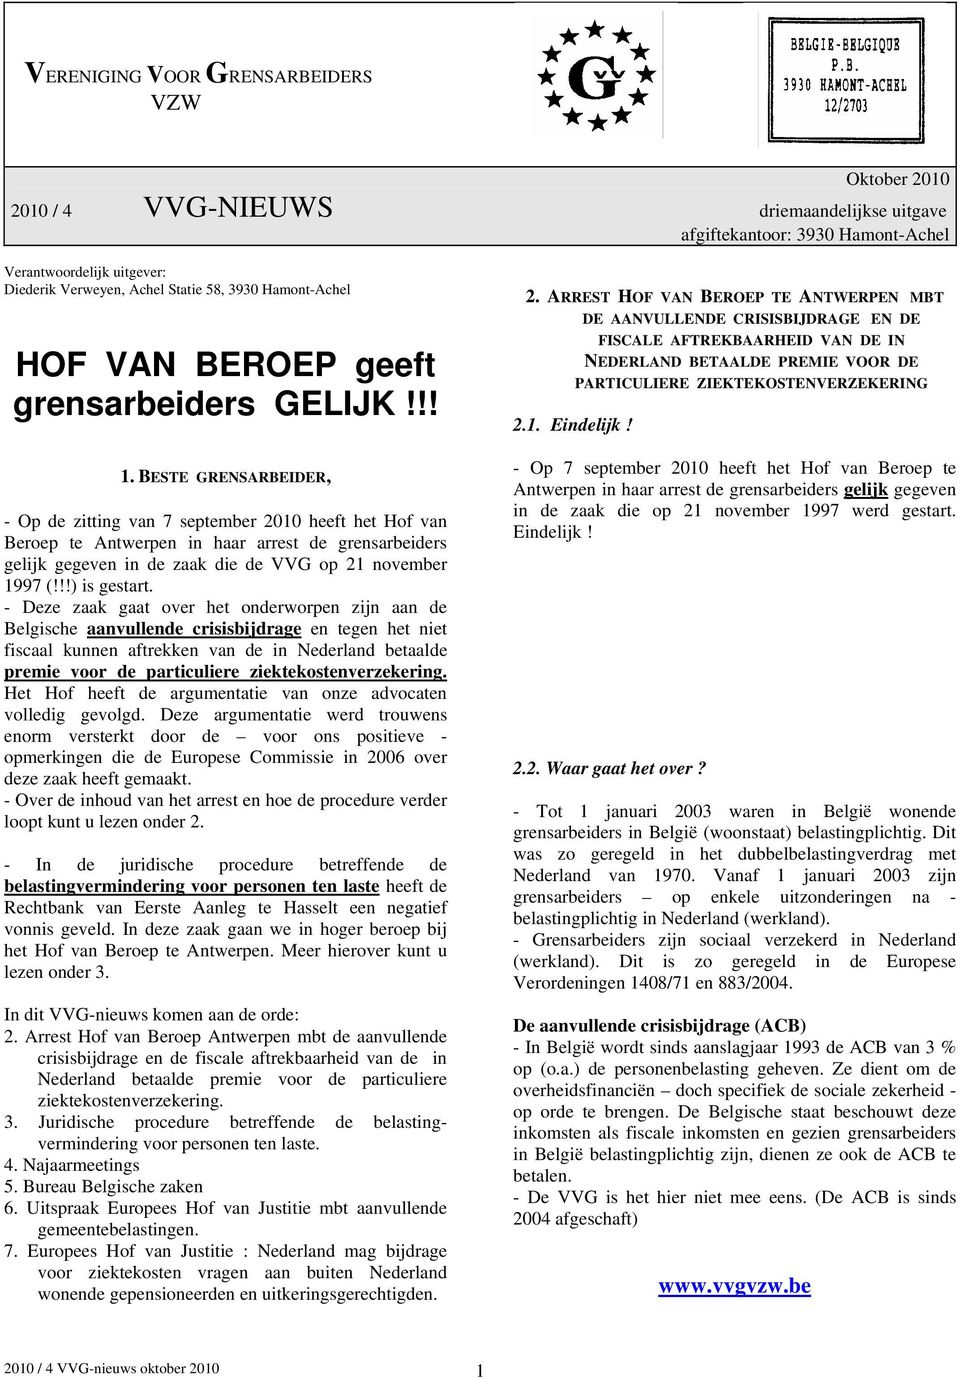 BESTE GRENSARBEIDER, - Op de zitting van 7 september 2010 heeft het Hof van Beroep te Antwerpen in haar arrest de grensarbeiders gelijk gegeven in de zaak die de VVG op 21 november 1997 (!